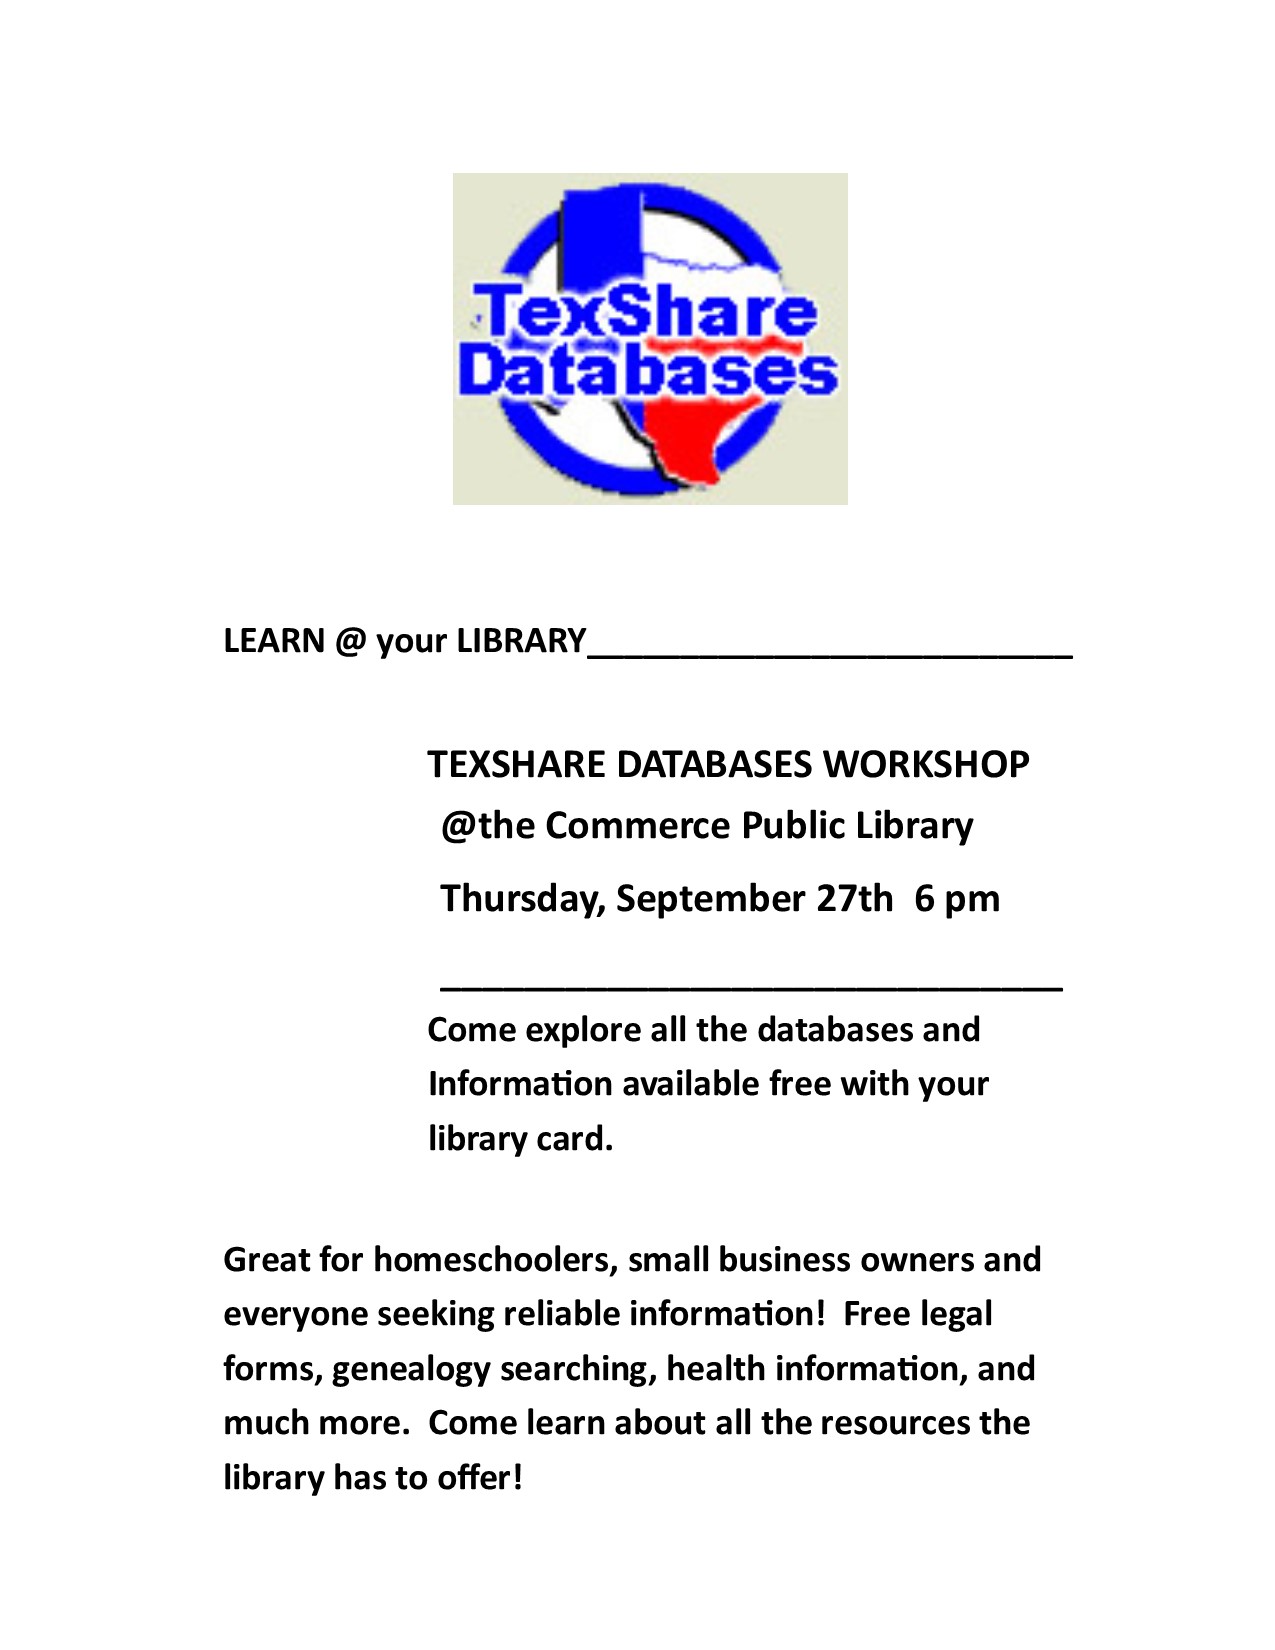 Texshare databases.jpg